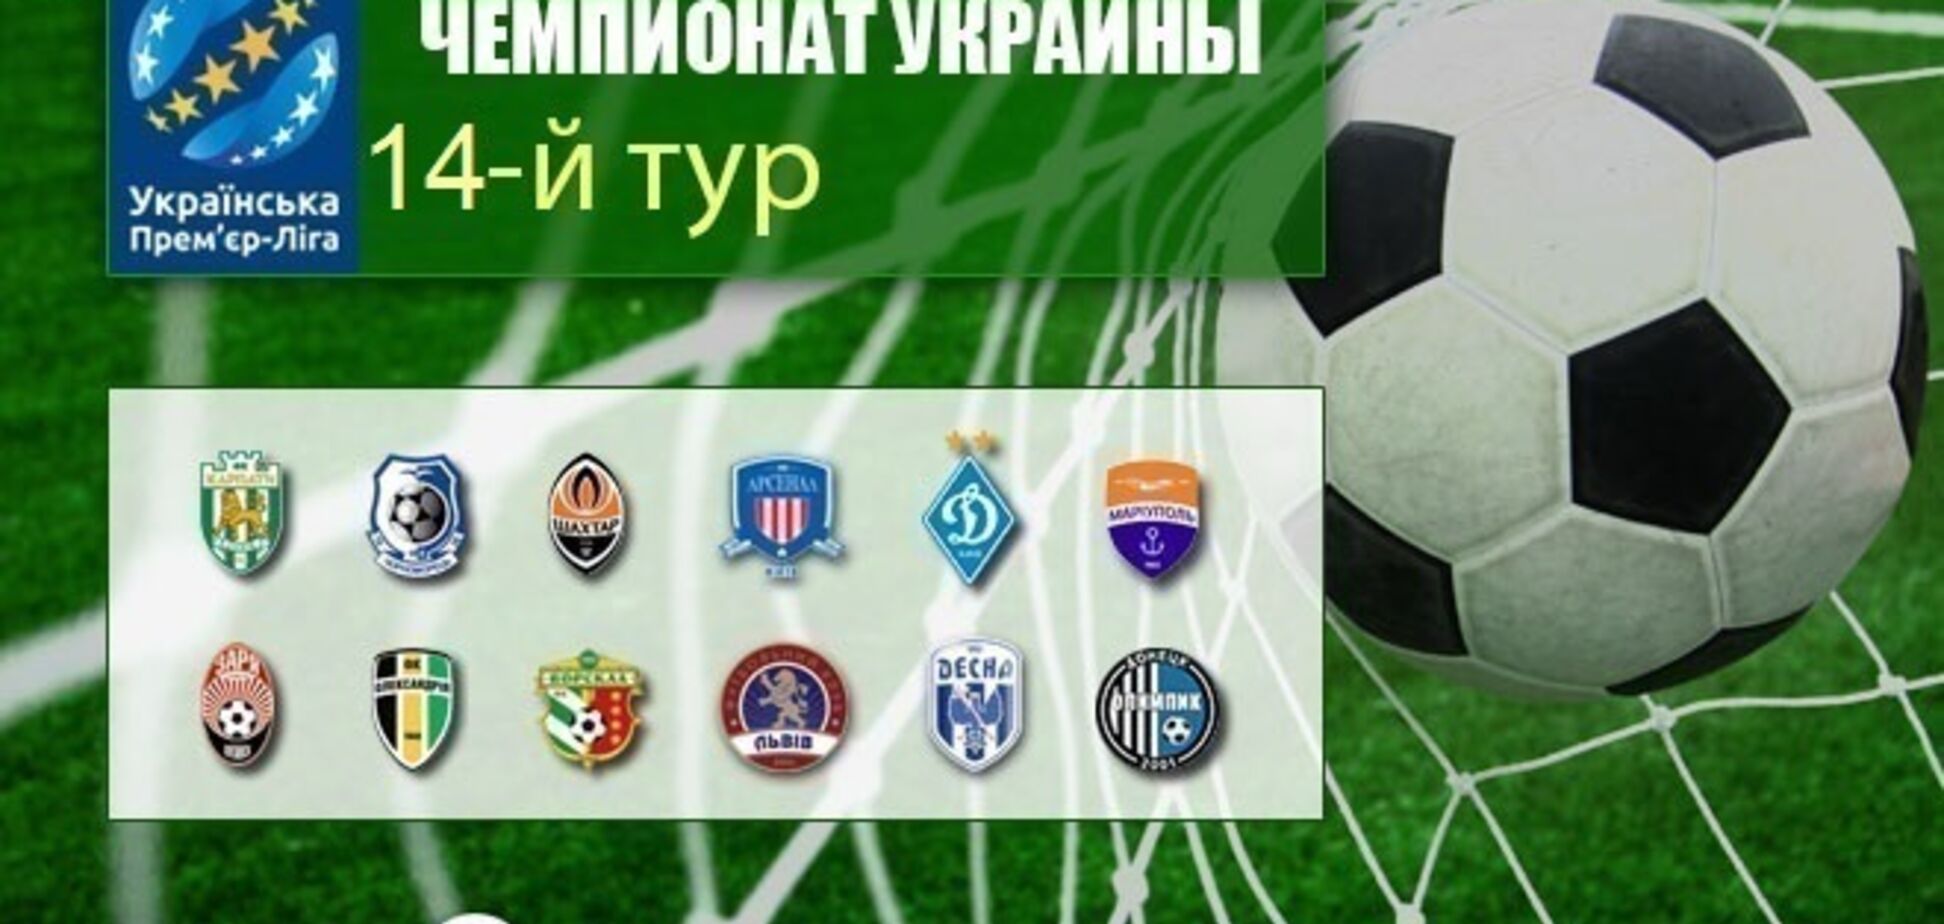 14-й тур чемпіонату України з футболу: результати та огляди